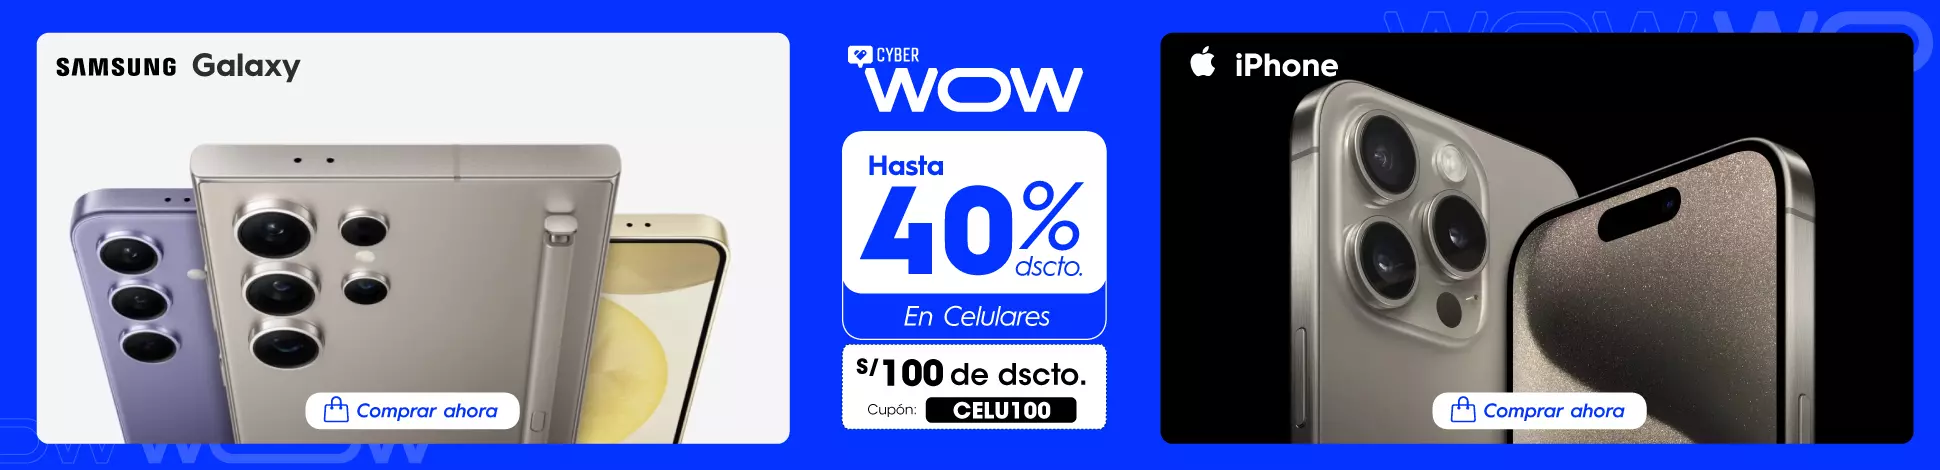 hs-CW-abril24-celulares-premiun.webp | Juntoz.com